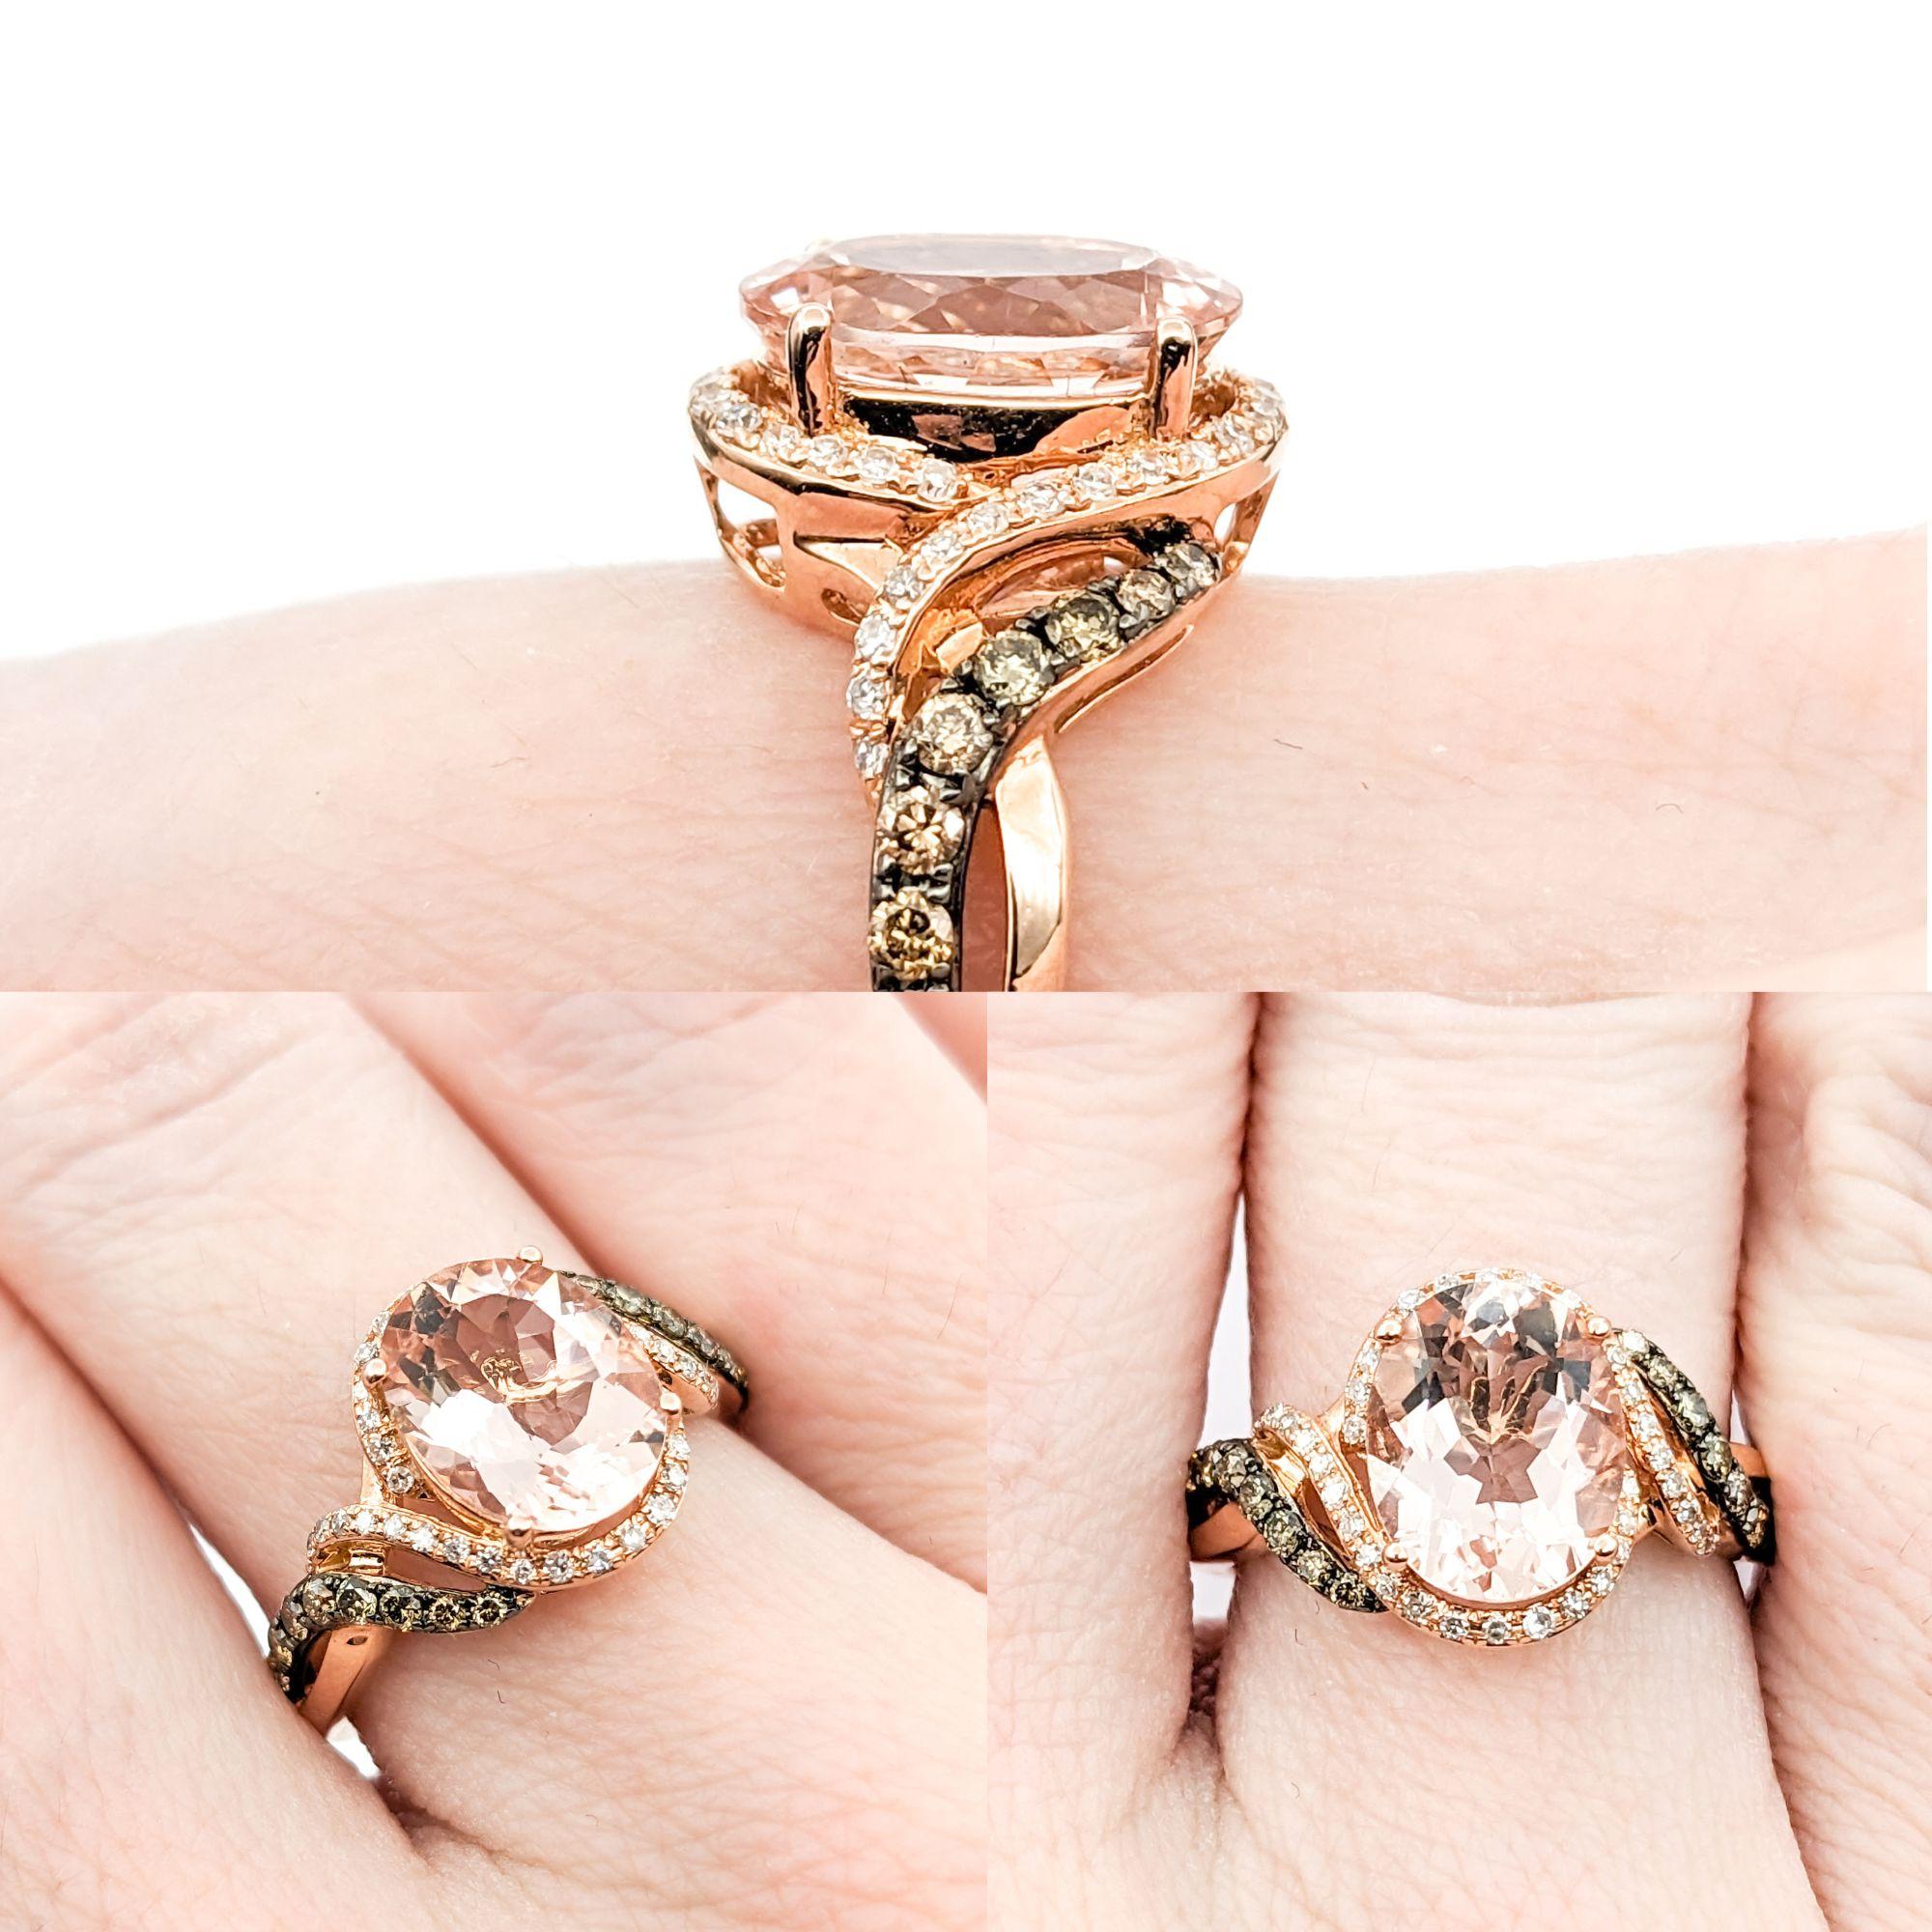 2,35 Karat Morganit & Diamanten Ring aus Roségold


Dieser exquisite Edelstein-Mode-Ring aus 14-karätigem Roségold präsentiert einen atemberaubenden 2,35-karätigen Morganit in der Mitte, umgeben von 0,36-karätigen, runden Diamanten. Diese Diamanten